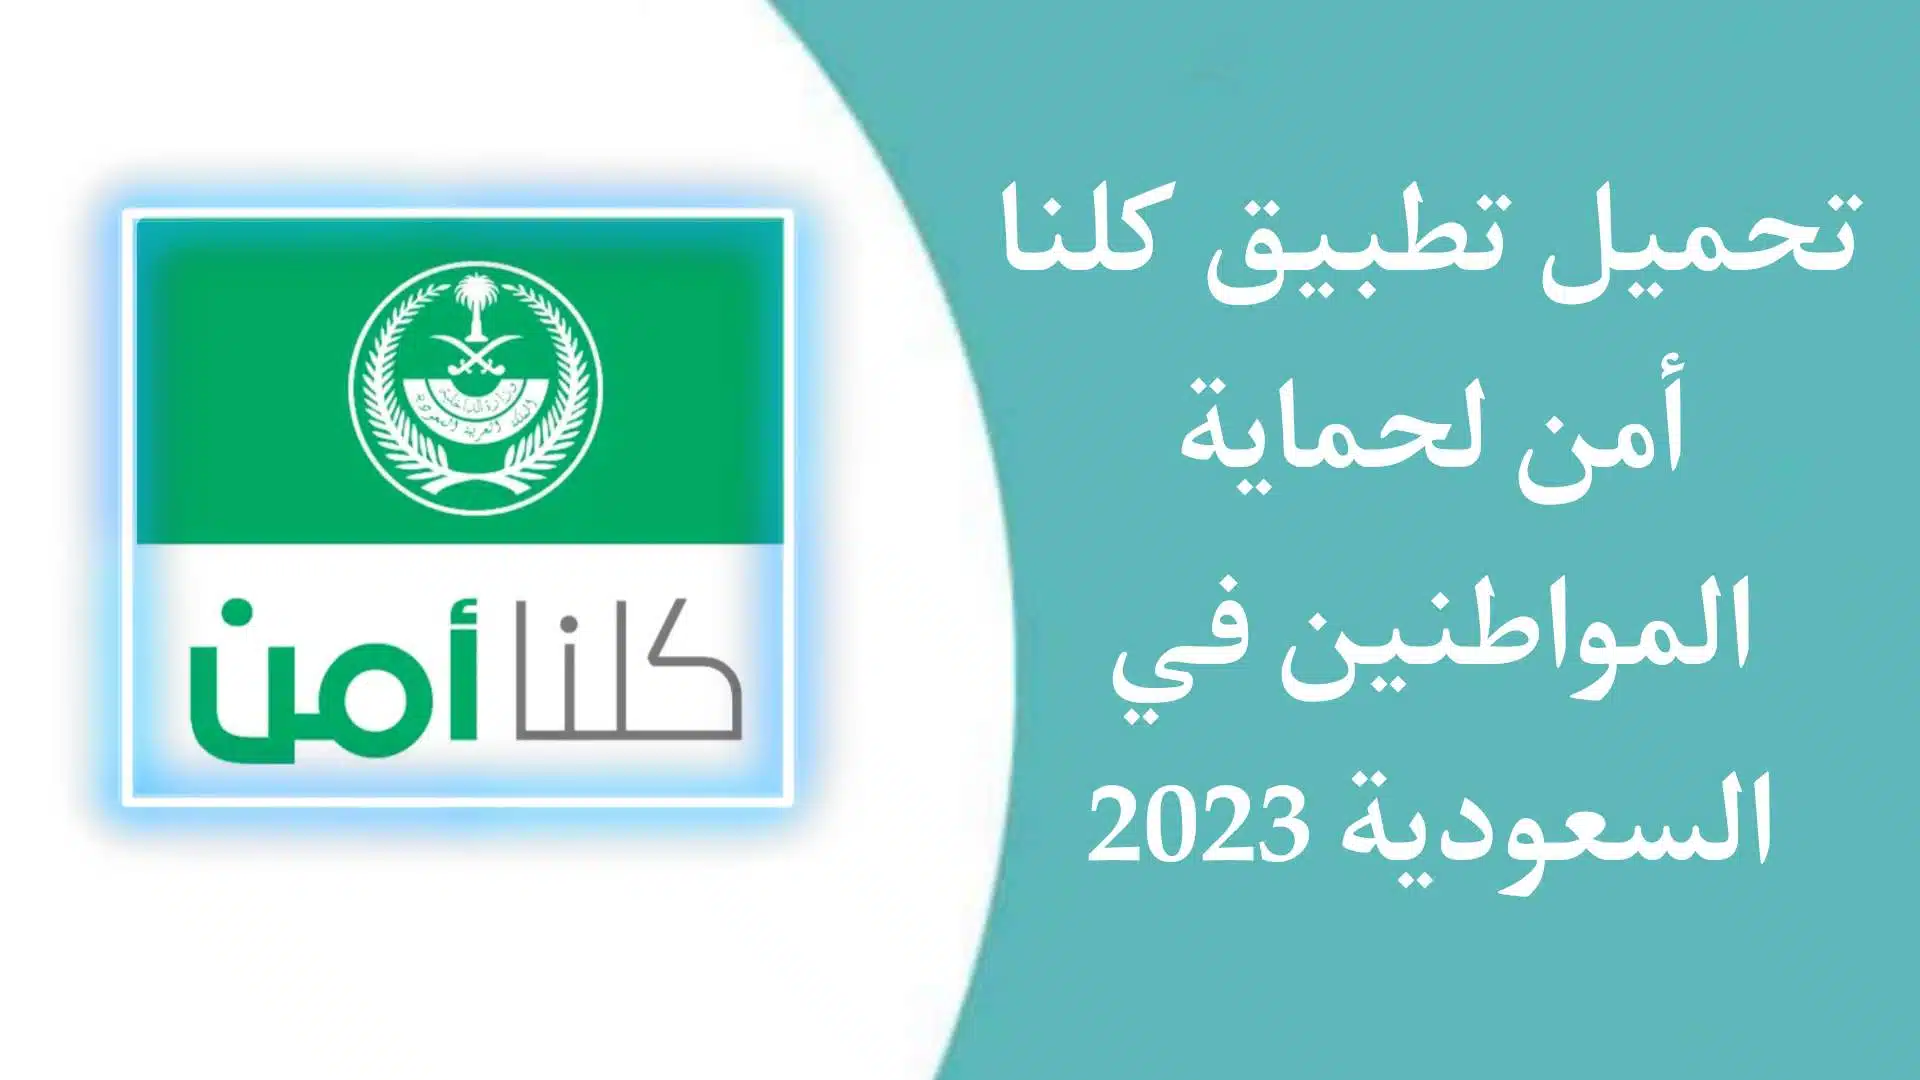 تحميل تطبيق كلنا امن 2023 Kollona amn APK لحماية المواطنين في السعودية